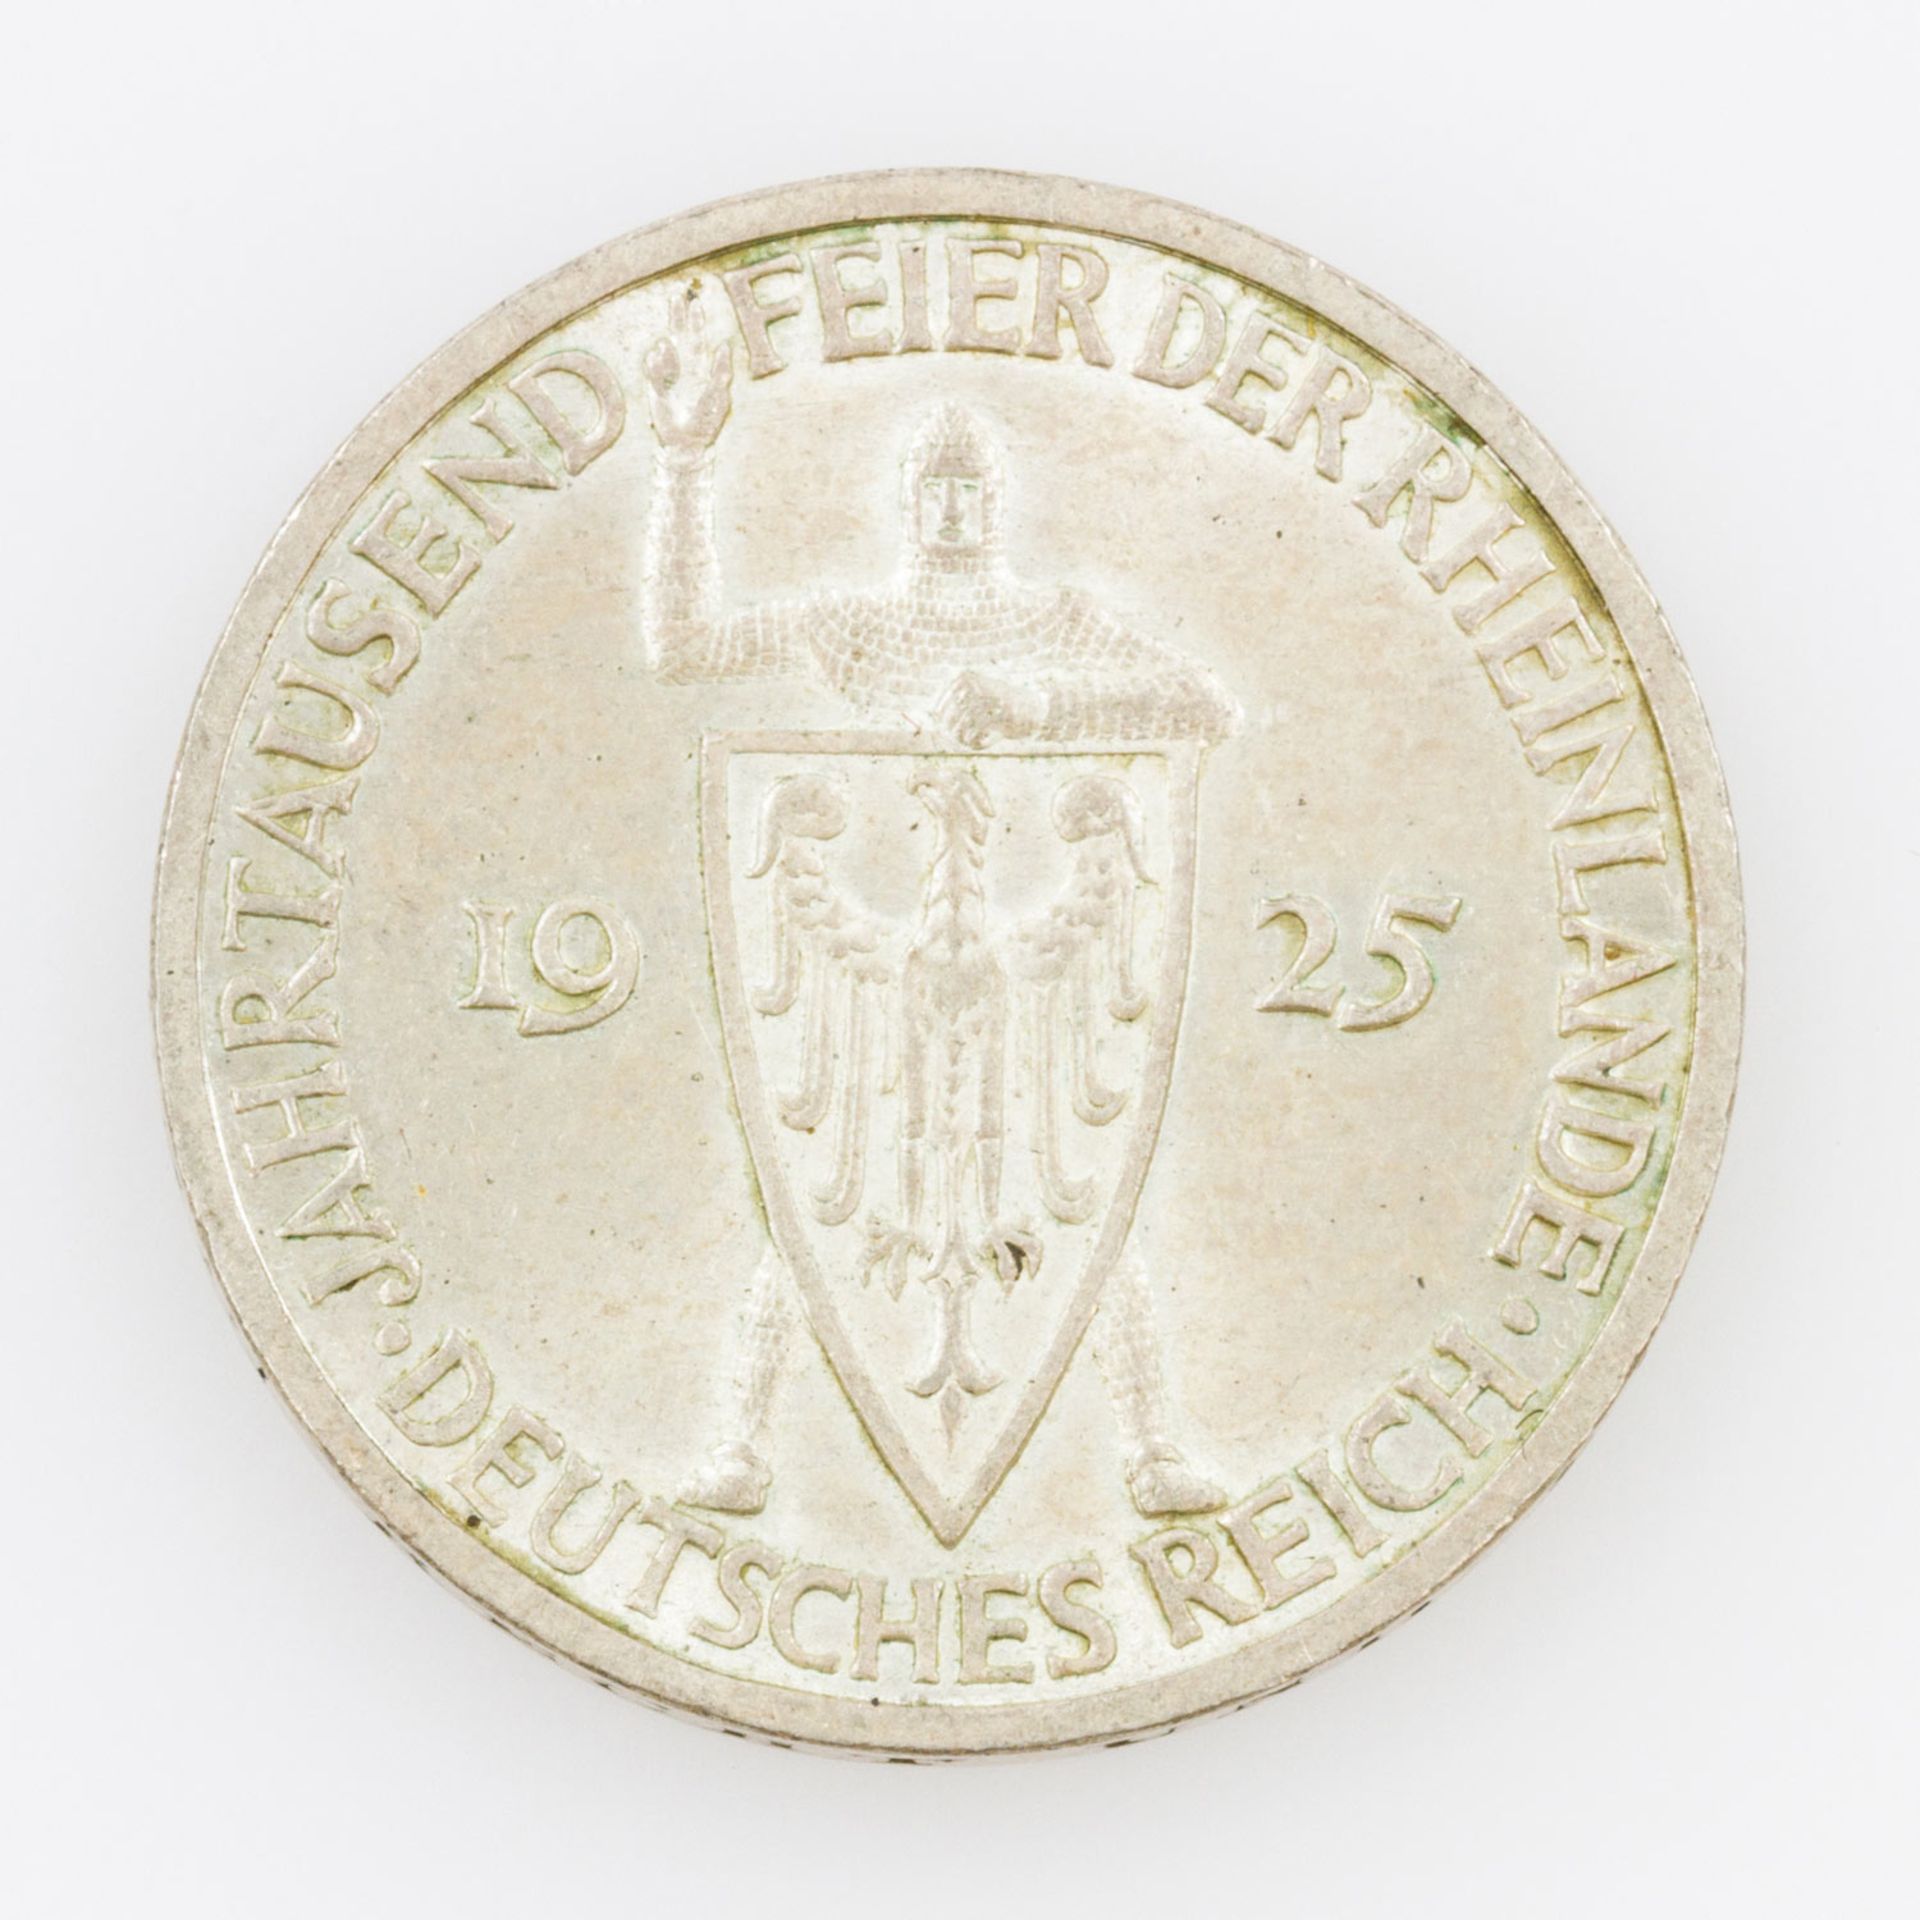 Dt. Reich / Weimarer Republik - 3 Reichsmark 1925/F, Tausendjahrfeier Rheinlande, vz.